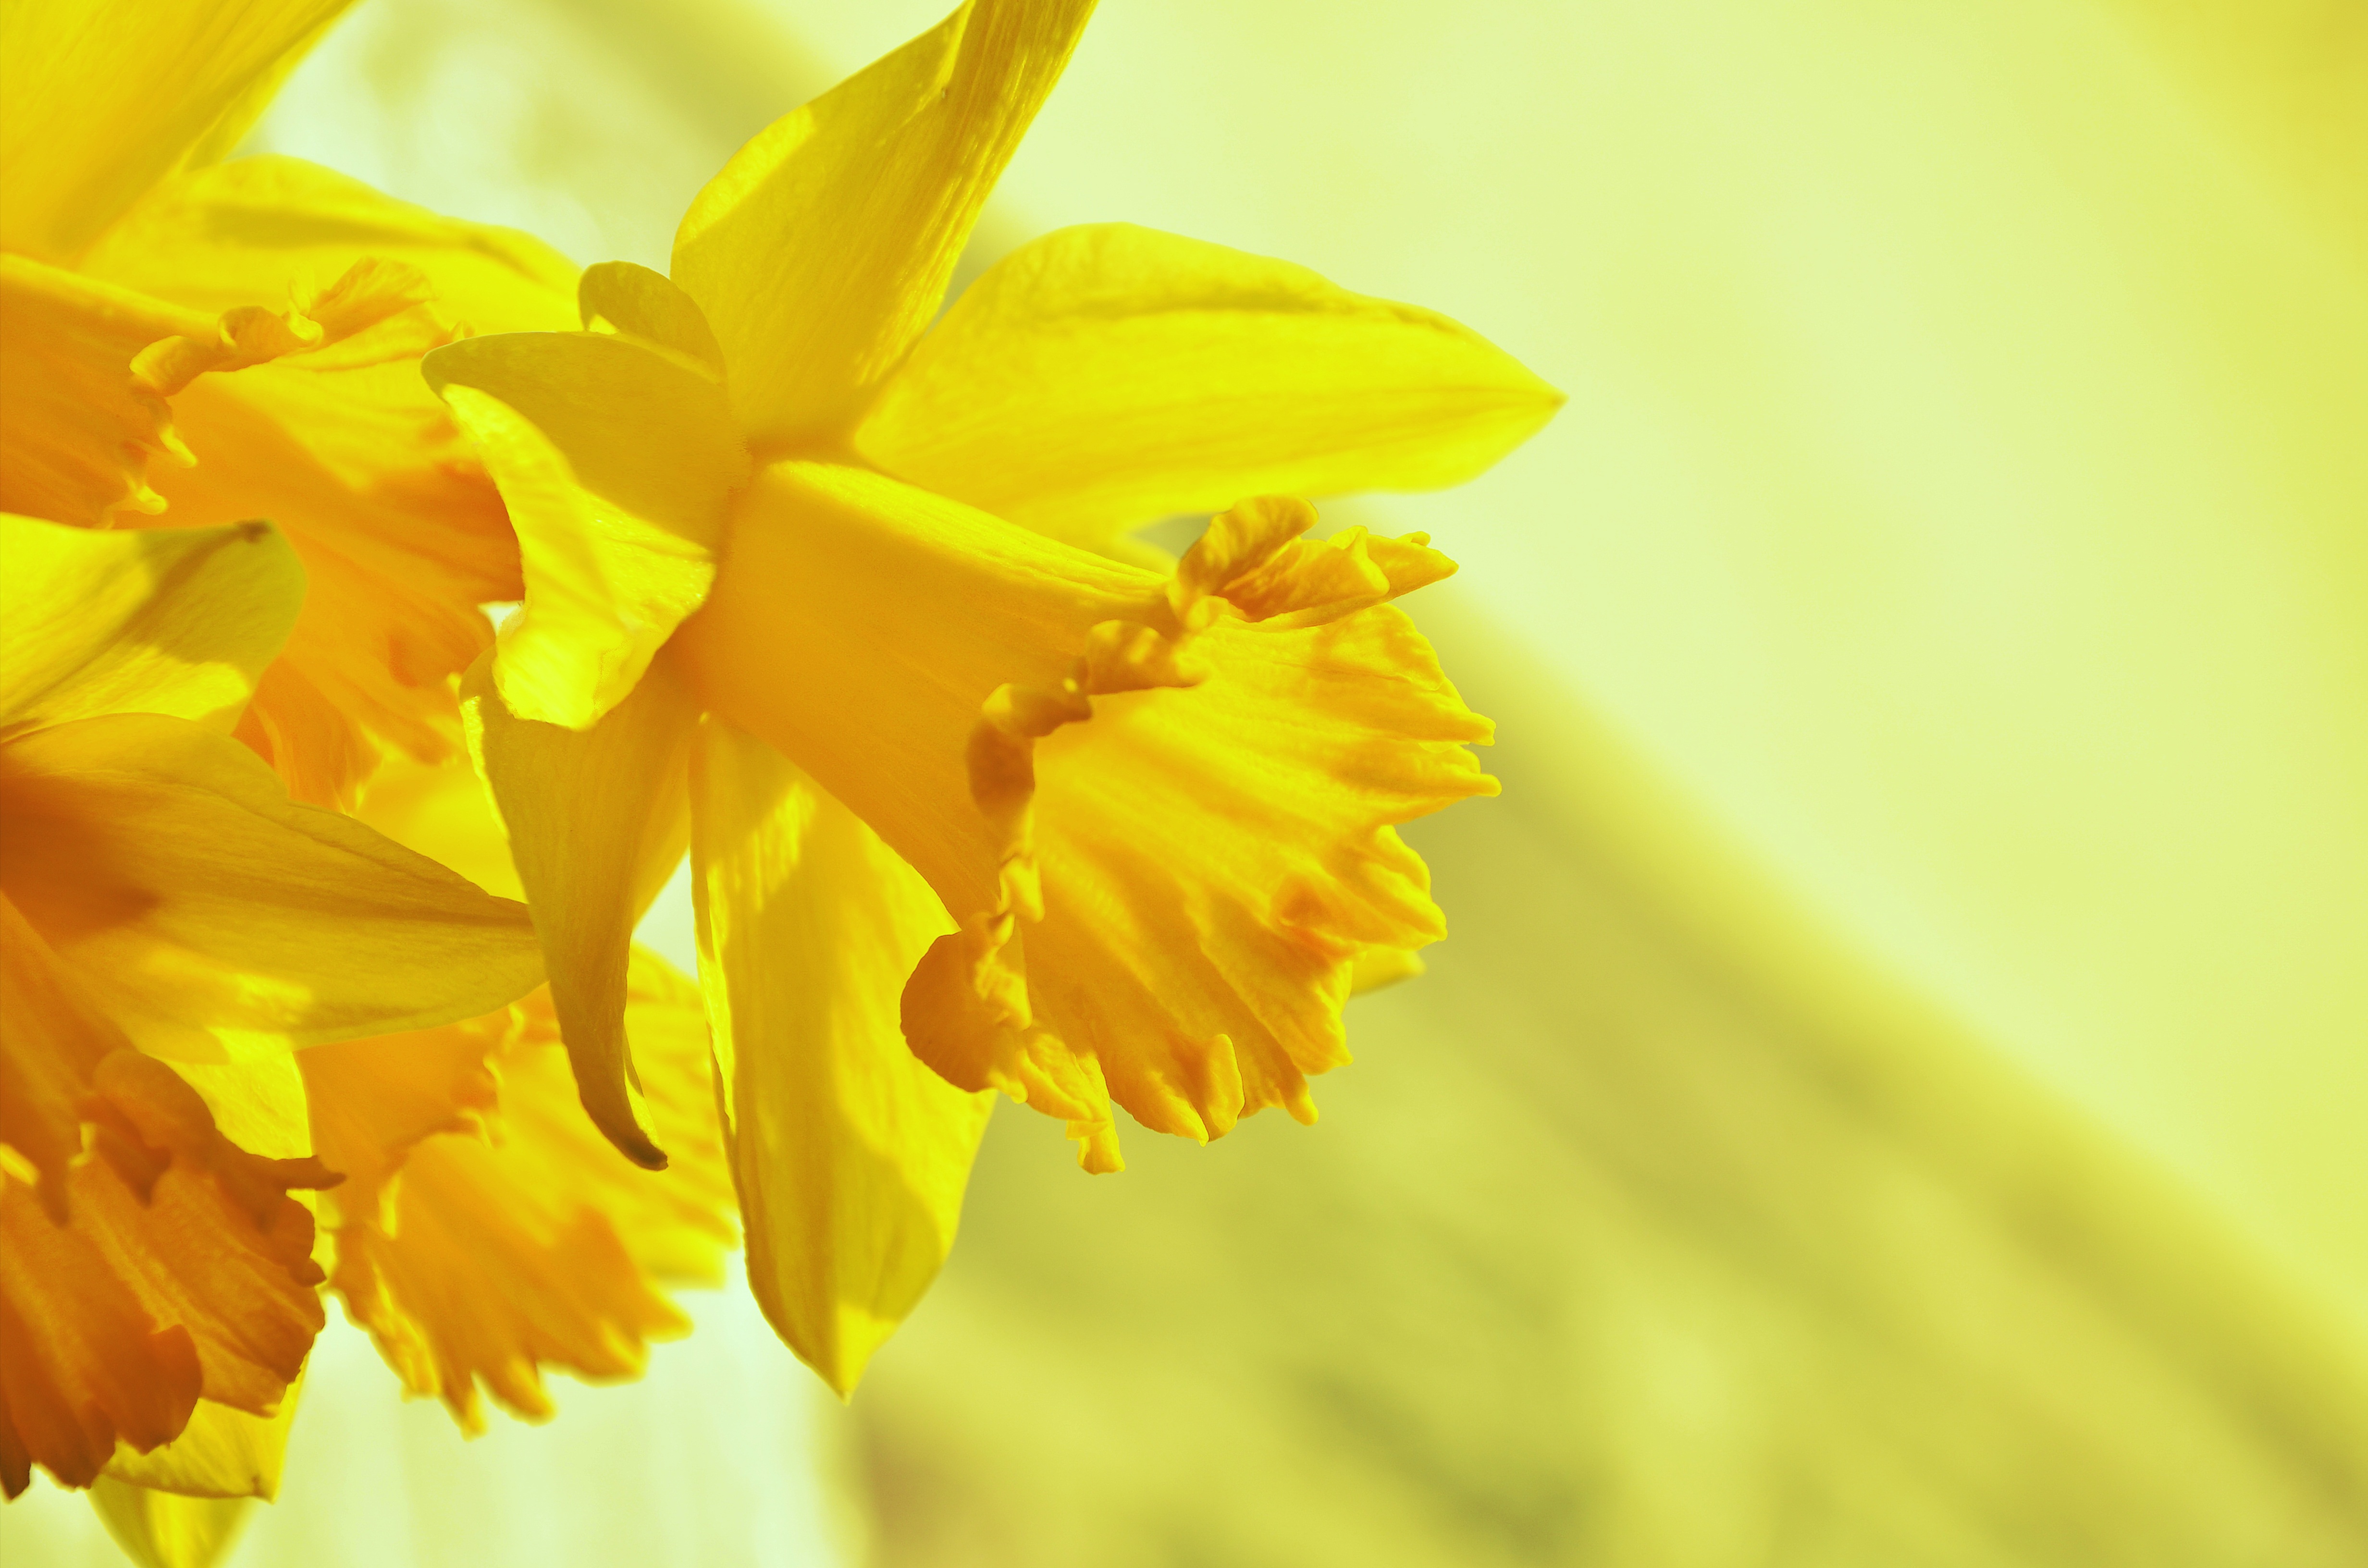 Бесплатное фото Яркий желтый цветок под солнечными лучами